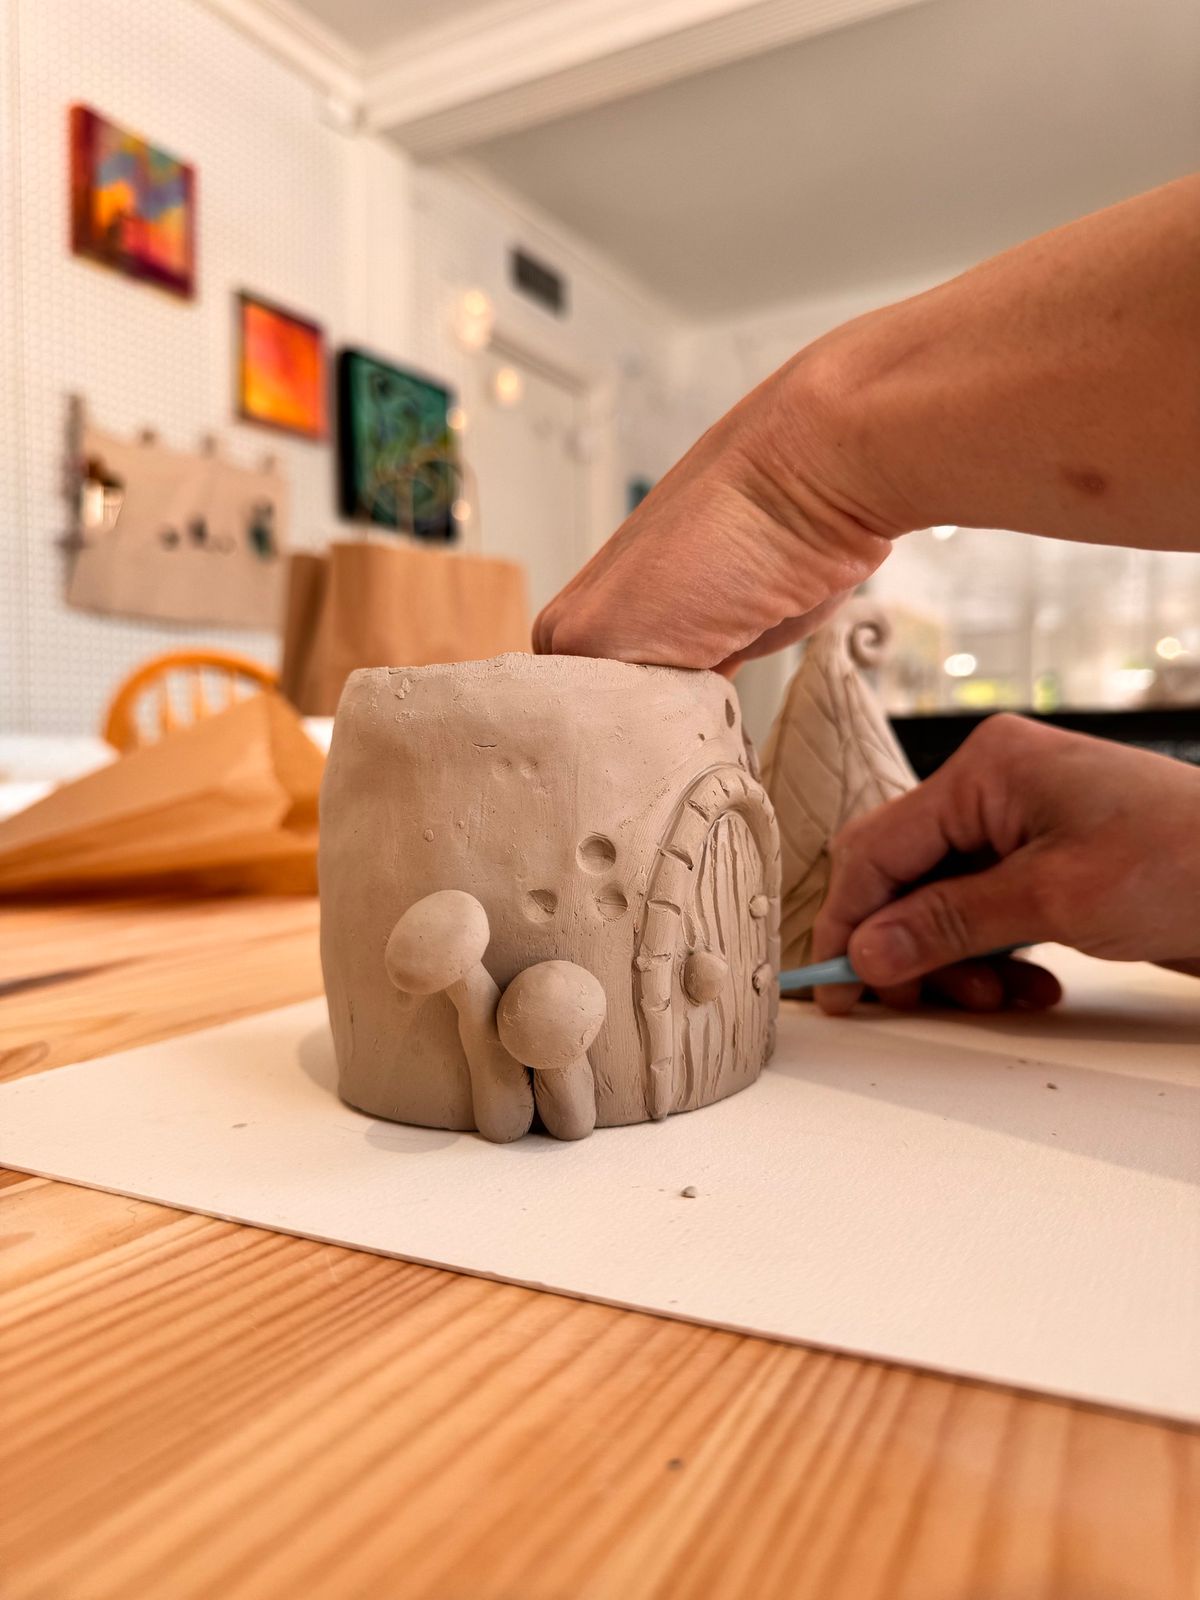  Skilled Sculptors: Kid Clay Classes